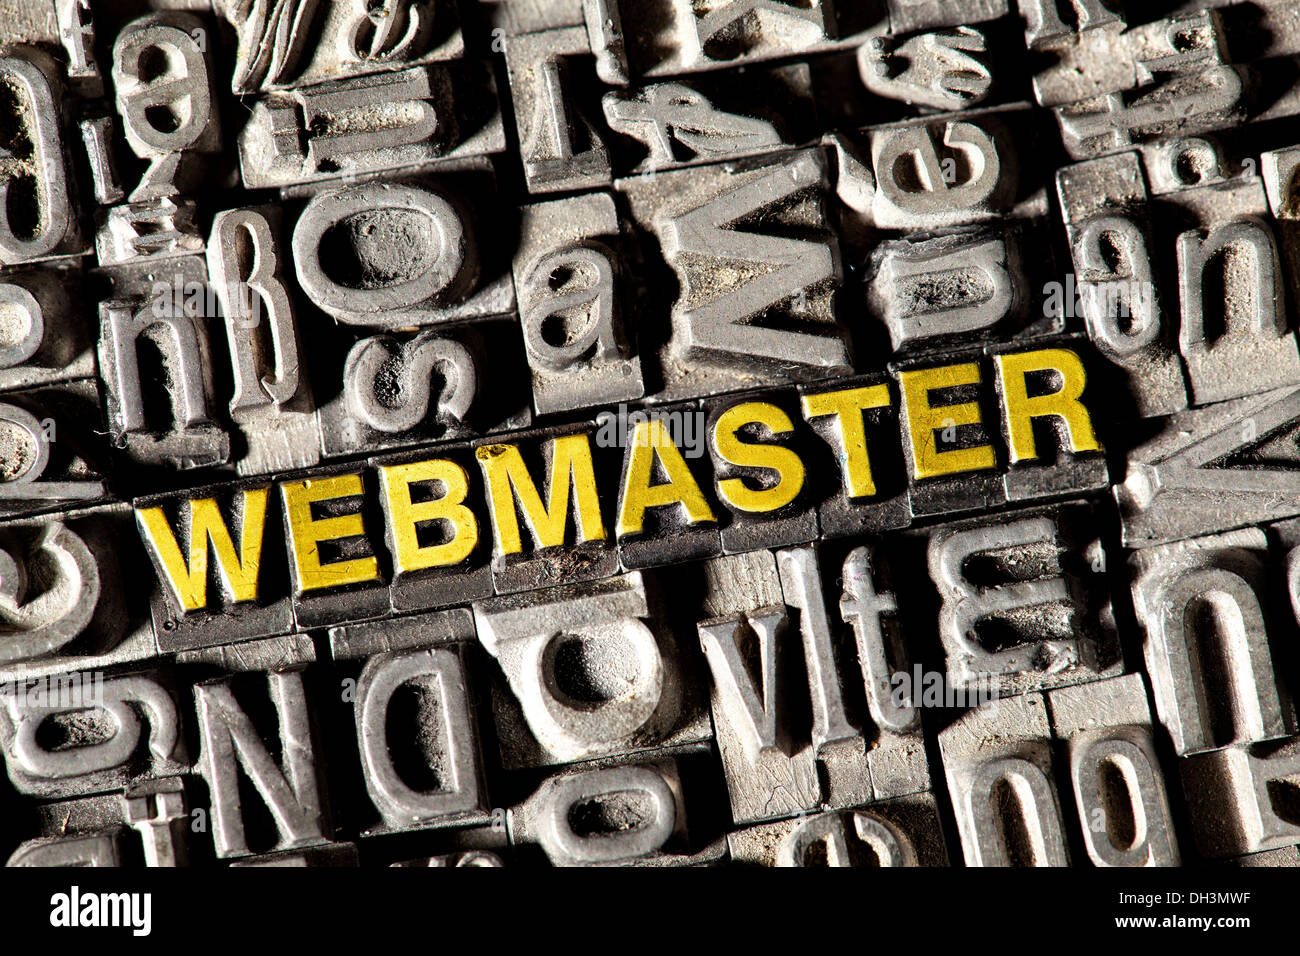 Vecchio portano lettere che compongono la parola "Webmaster" Foto Stock